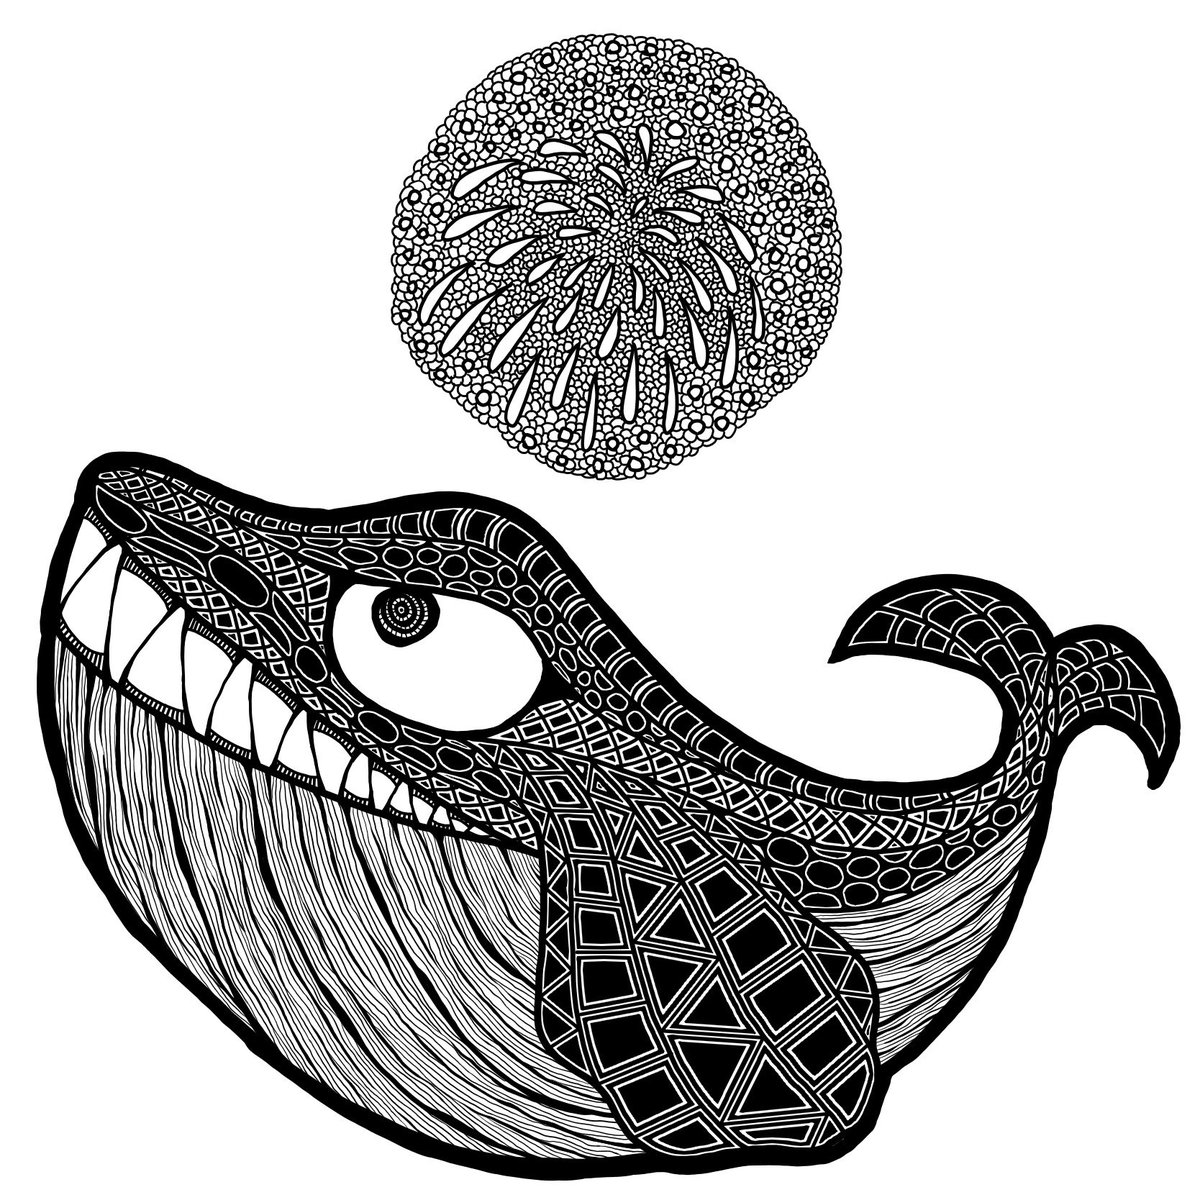 山口太一 V Twitter 久しぶりにイラスト描きました ゼンタングル モノクロアート クジラ 鯨 花火